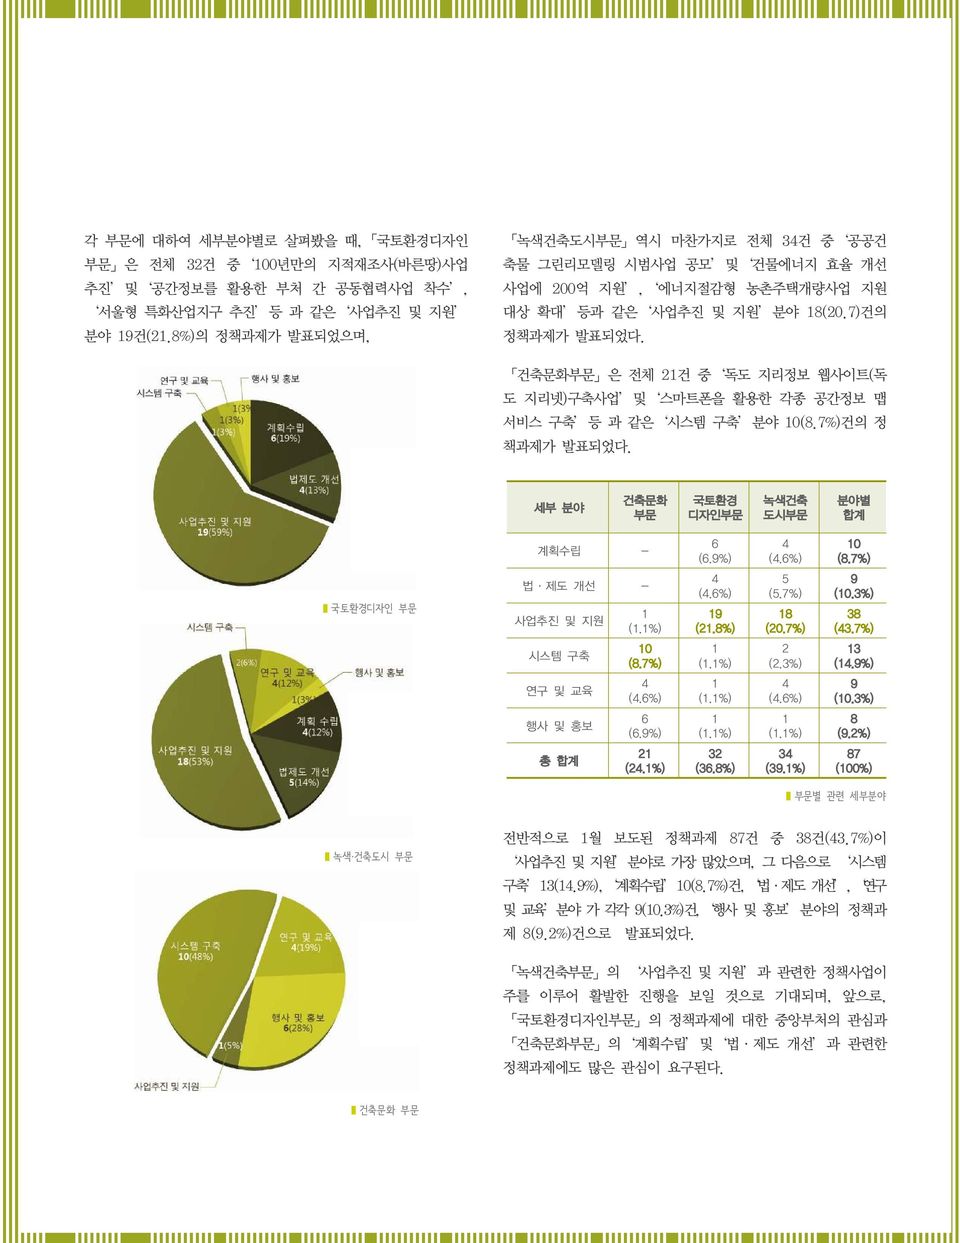 7%)건의 정 책과제가 발표되었다. 국토환경디자인 부문 세부 분야 건축문화 부문 국토환경 디자인부문 녹색건축 도시부문 분야별 합계 계획수립 - 6 (6.9%) 4 (4.6%) 10 (8.7%) 법 제도 개선 - 4 (4.6%) 5 (5.7%) 9 (10.3%) 사업추진 및 지원 1 (1.1%) 19 (21.8%) 18 (20.7%) 38 (43.